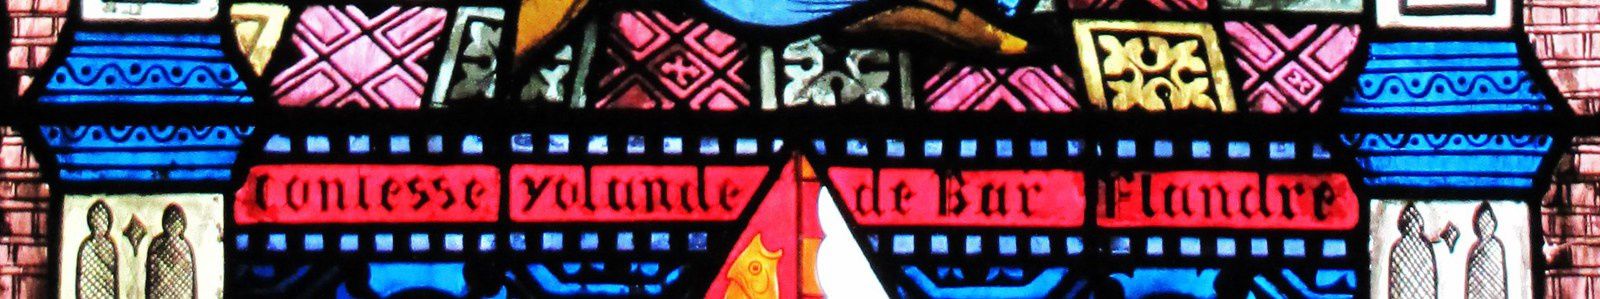 Un vitrail de la cathédrale Notre-Dame de Verdun